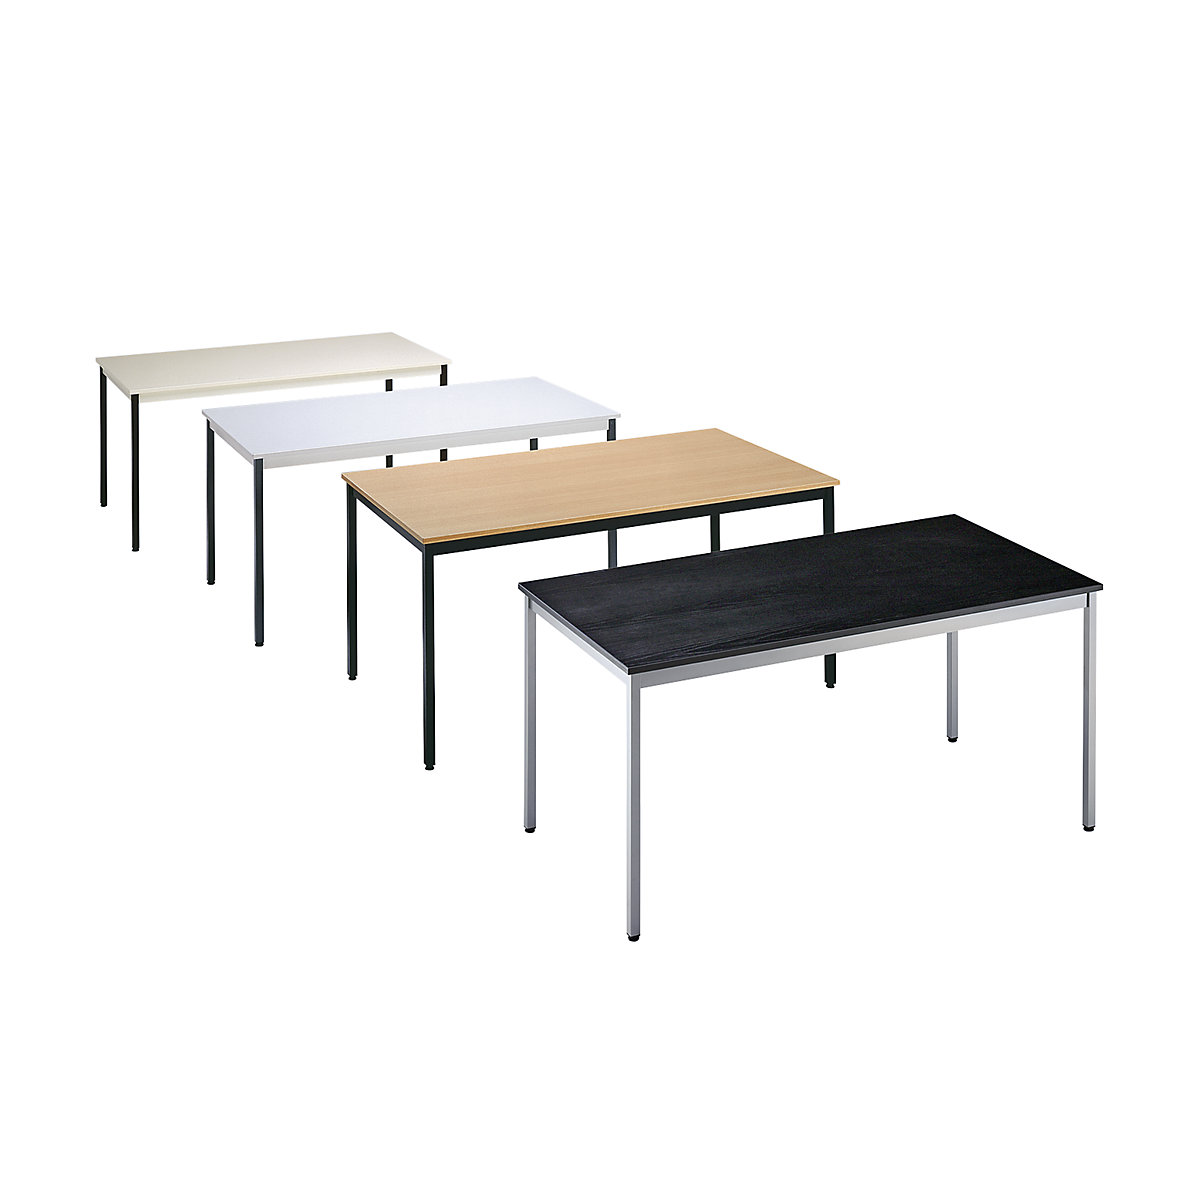 Table polyvalente – eurokraft basic, rectangulaire, l x h 1200 x 740 mm, profondeur 600 mm, plateau façon hêtre, piétement noir-1